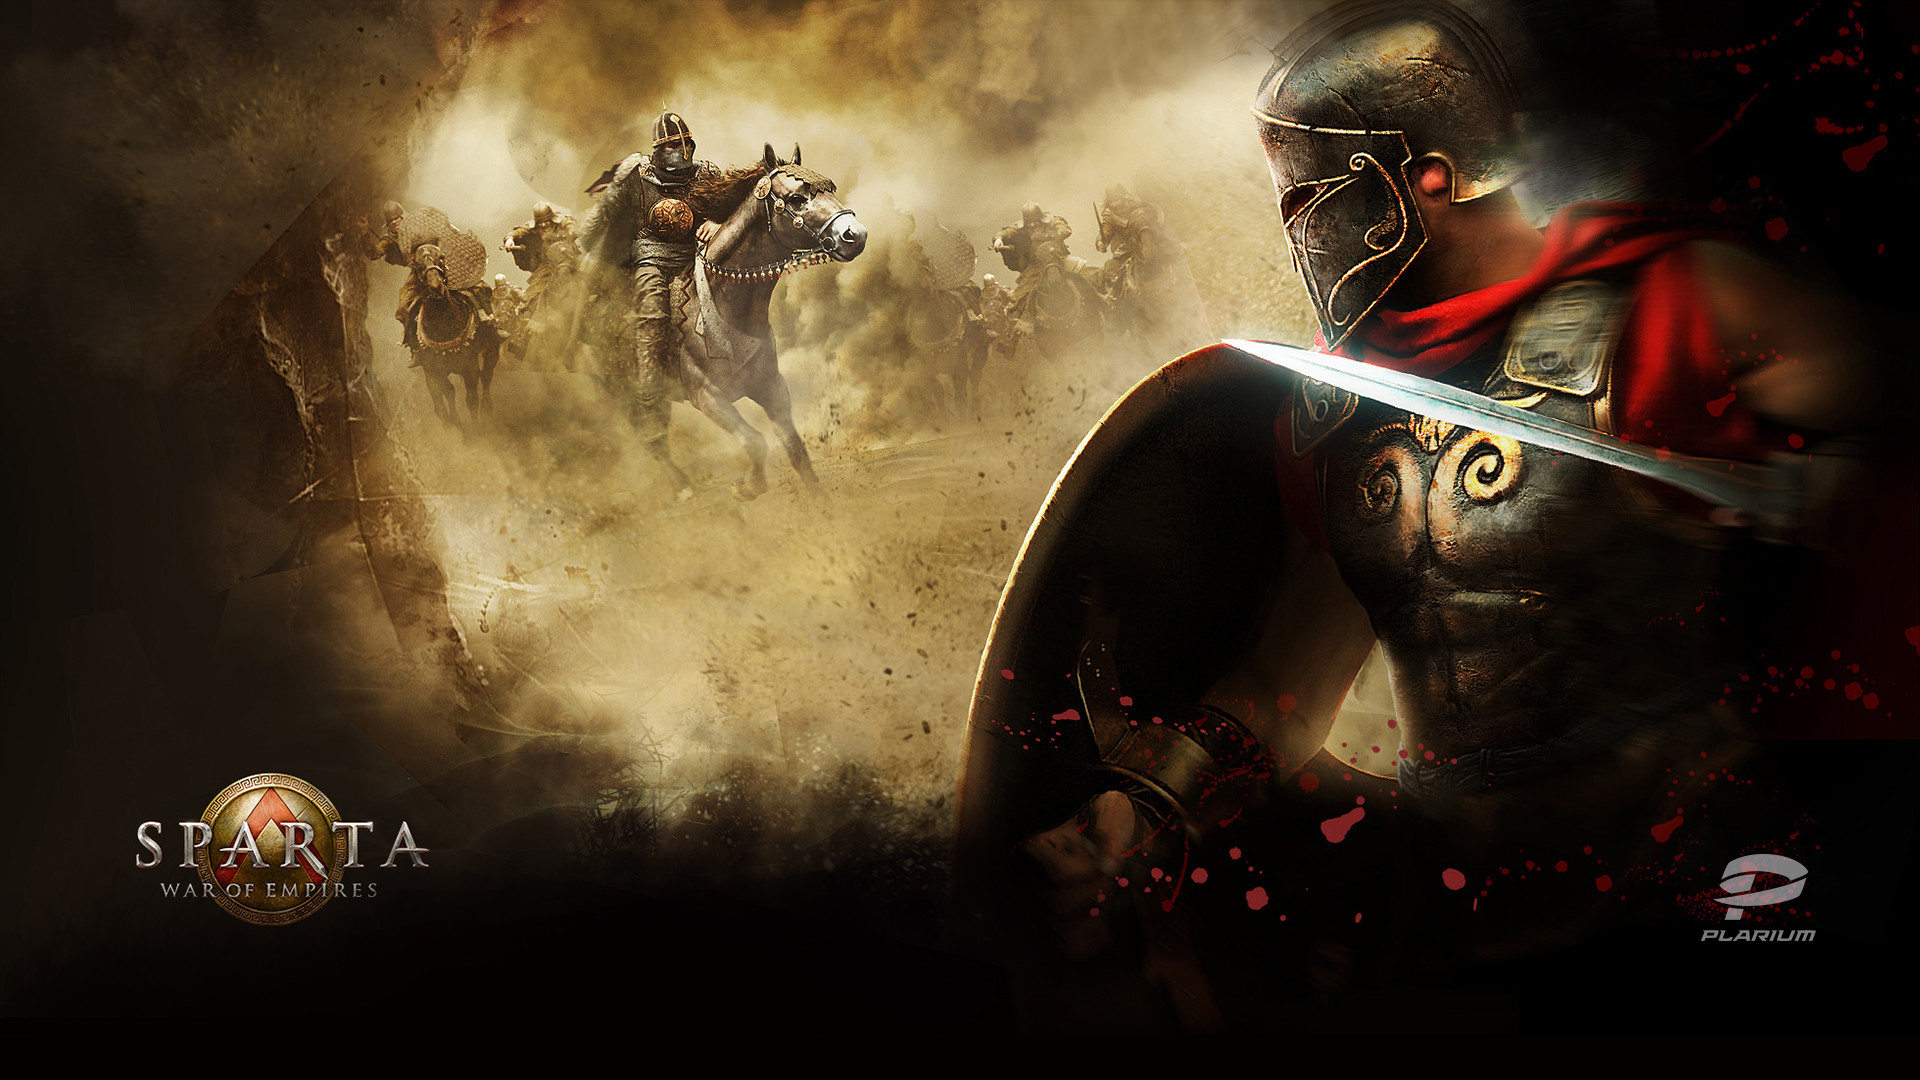 Spartans 300 Wallpaper Â - Spartan Warriors , HD Wallpaper & Backgrounds